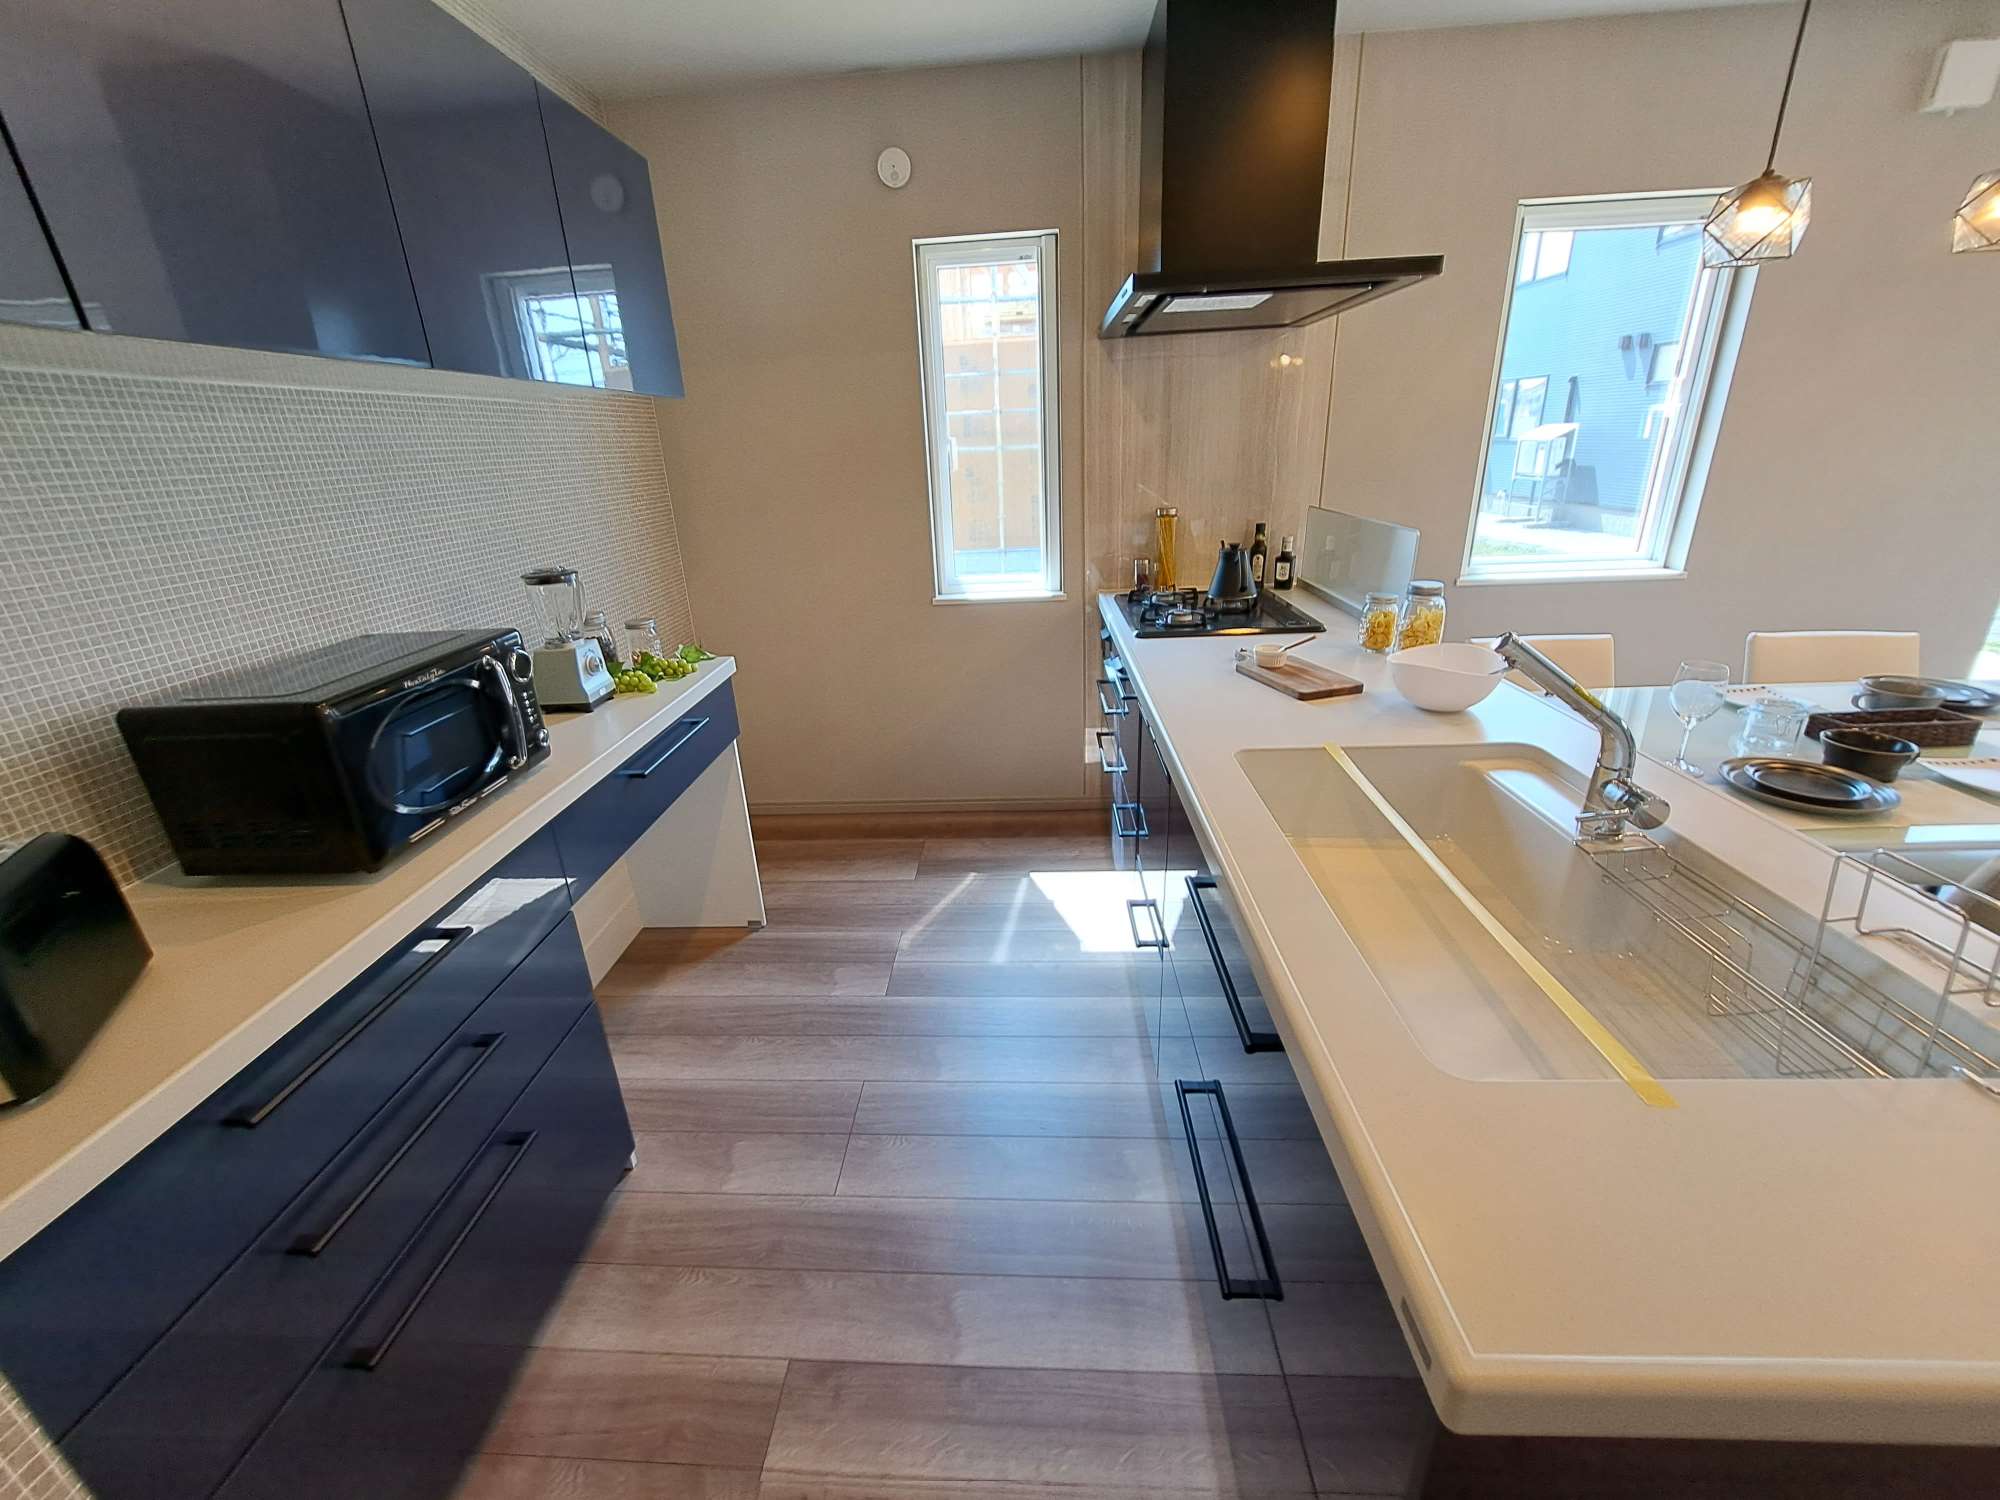 キッチン - 人工大理石の天板はとっても衛生的です。後片付けは食洗器が付いているので楽々。見学時はキッチンと食器棚の幅や動線を確認できます。 -  - 